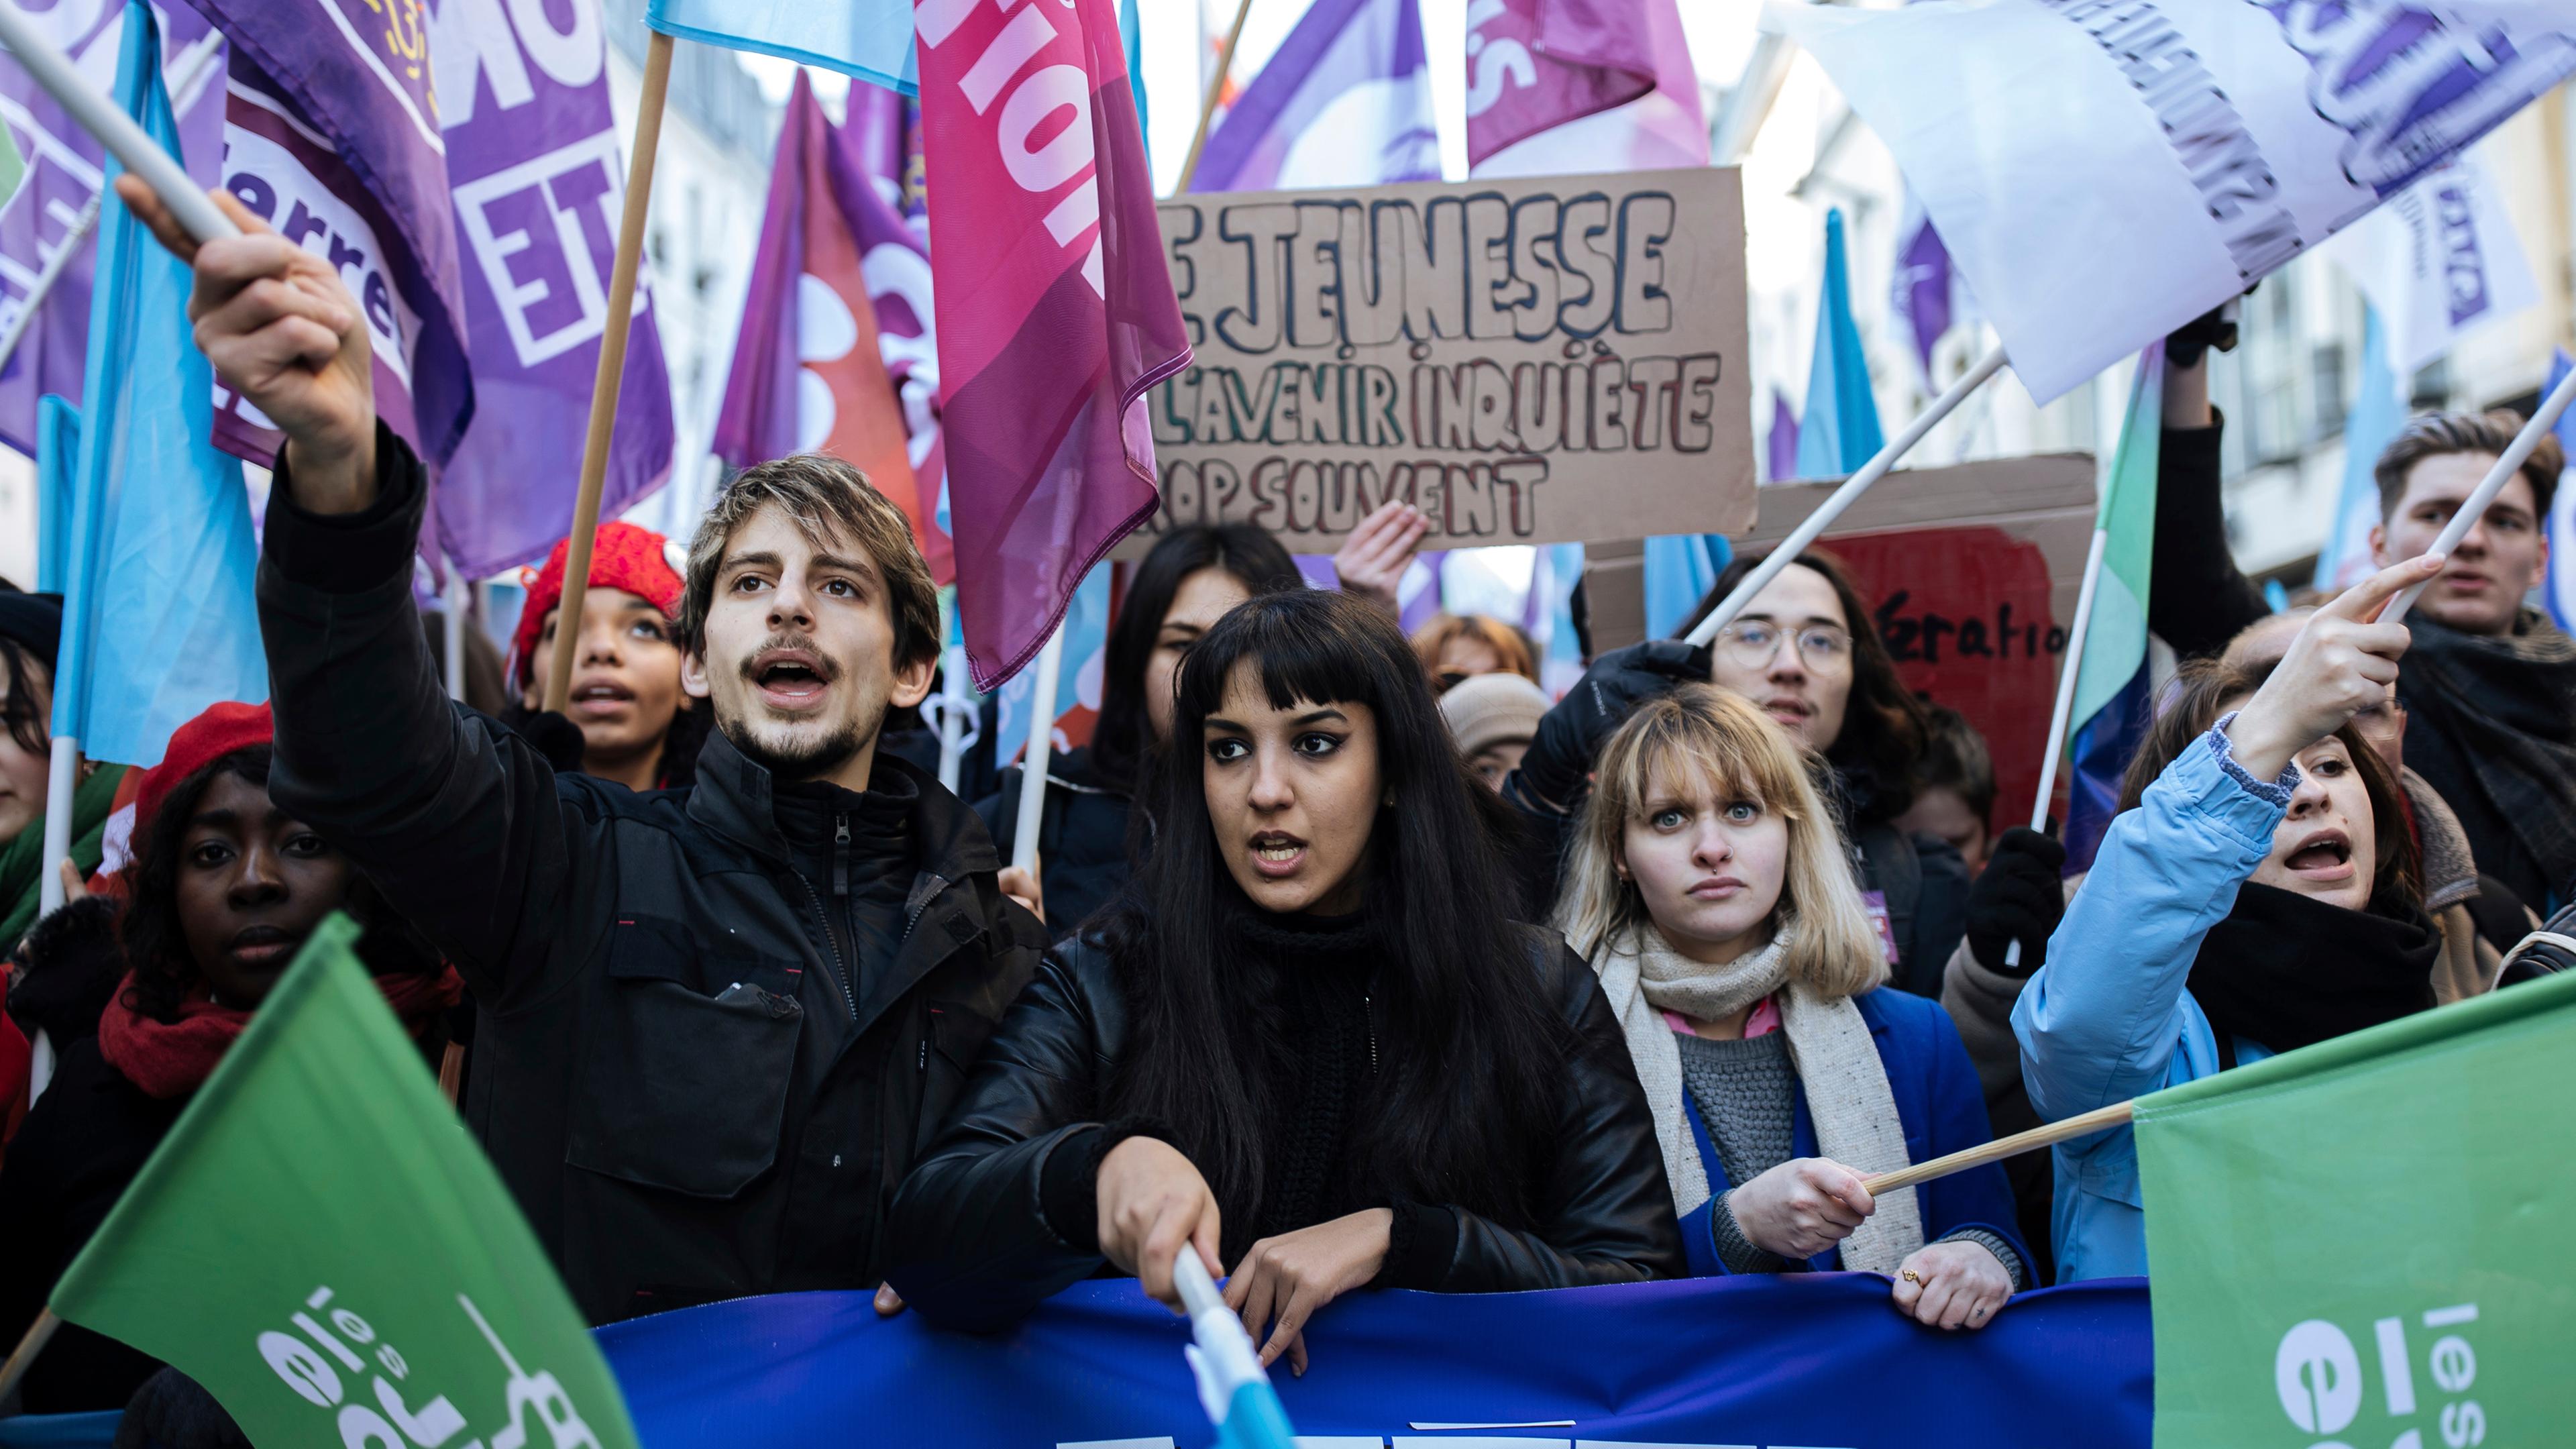 Demonstranten schwenken Fahnen während einer Kundgebung, zu der die linke Partei La France Insoumise (LFI) und Jugendorganisationen aufgerufen haben, um gegen die Rentenreform des französischen Präsidenten zu protestieren.